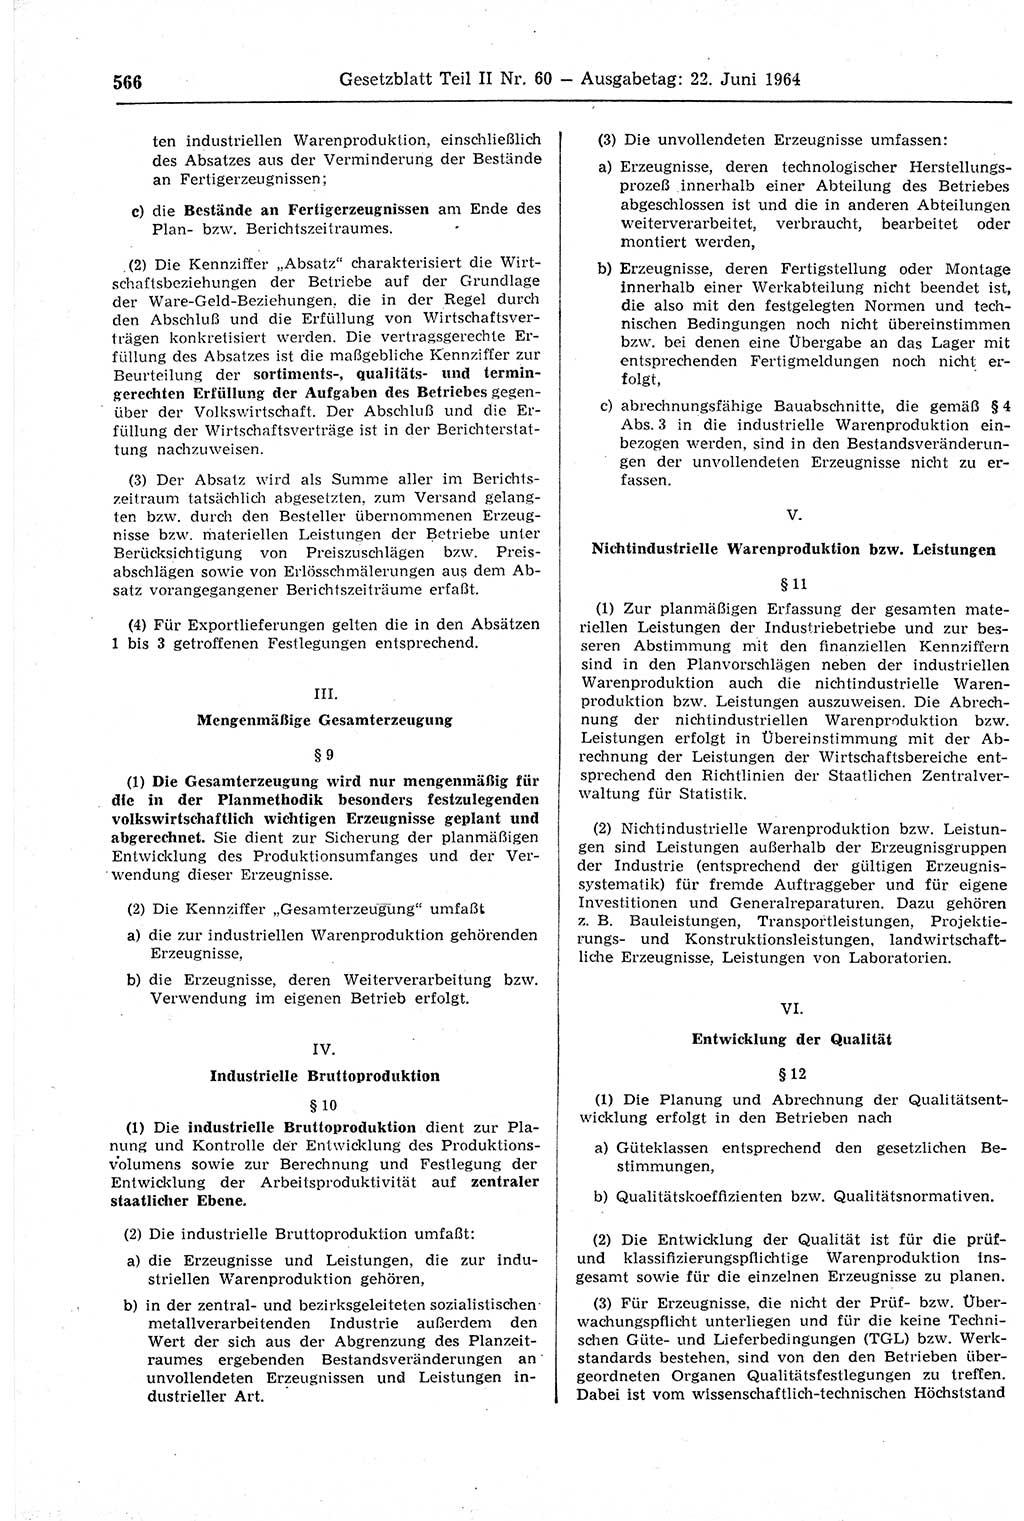 Gesetzblatt (GBl.) der Deutschen Demokratischen Republik (DDR) Teil ⅠⅠ 1964, Seite 566 (GBl. DDR ⅠⅠ 1964, S. 566)